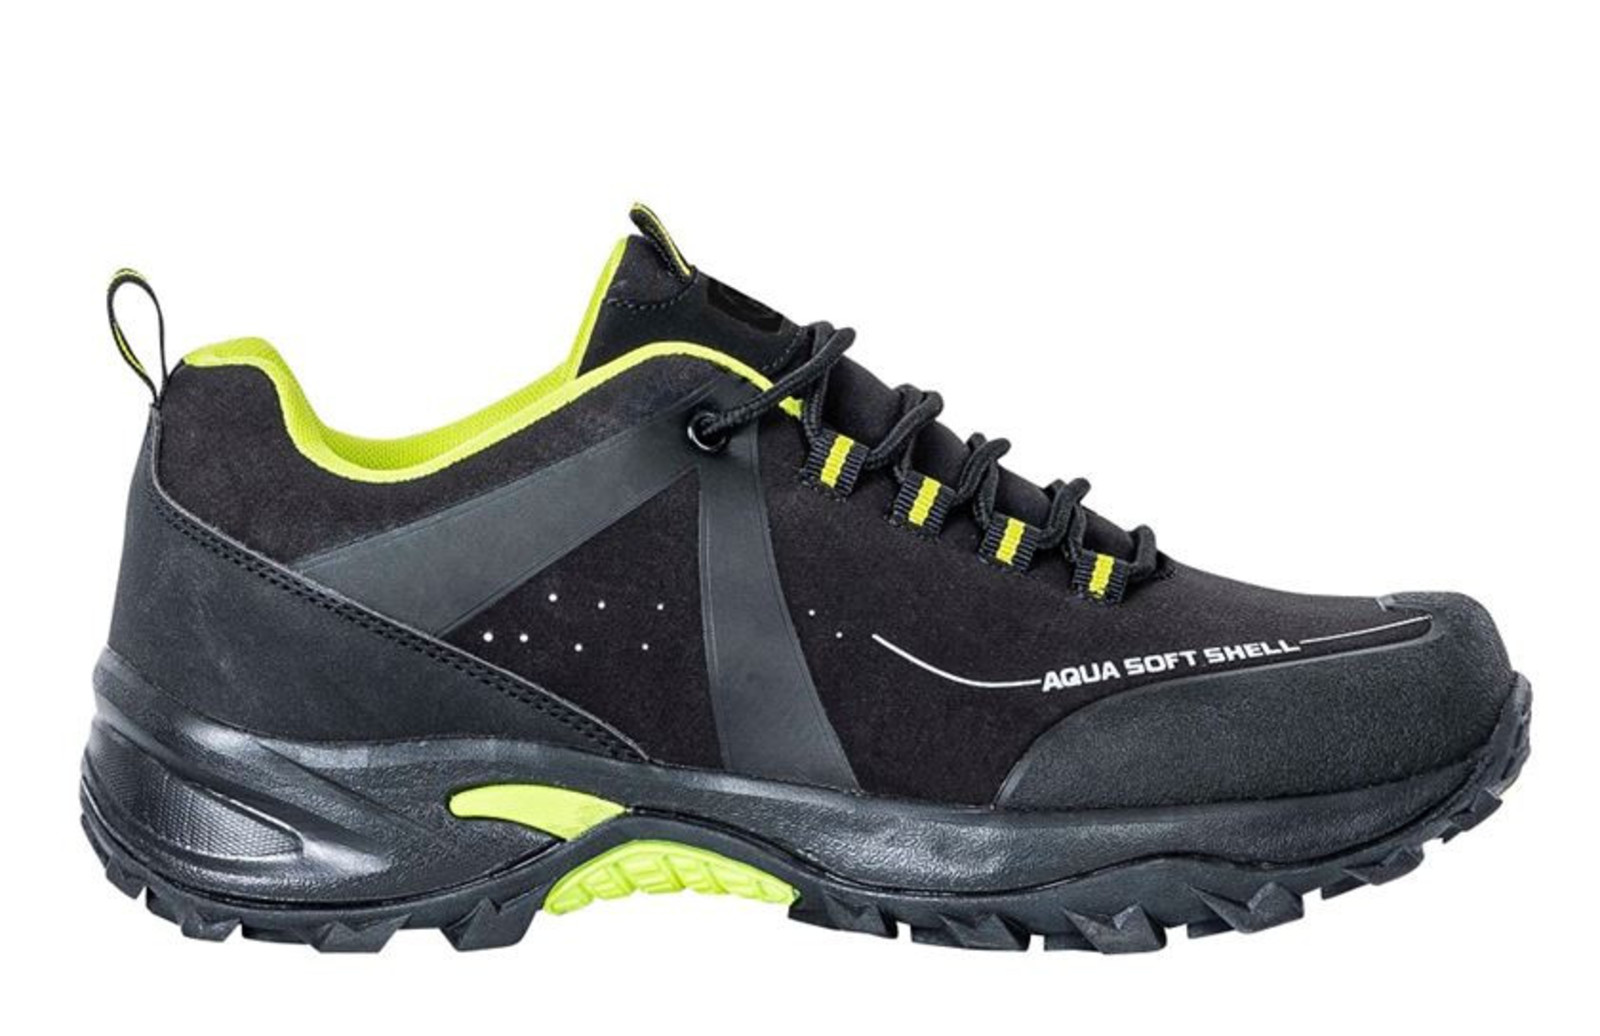 Outdoorová softshellová obuv Ardon Cross Low - veľkosť: 41, farba: čierna/zelená